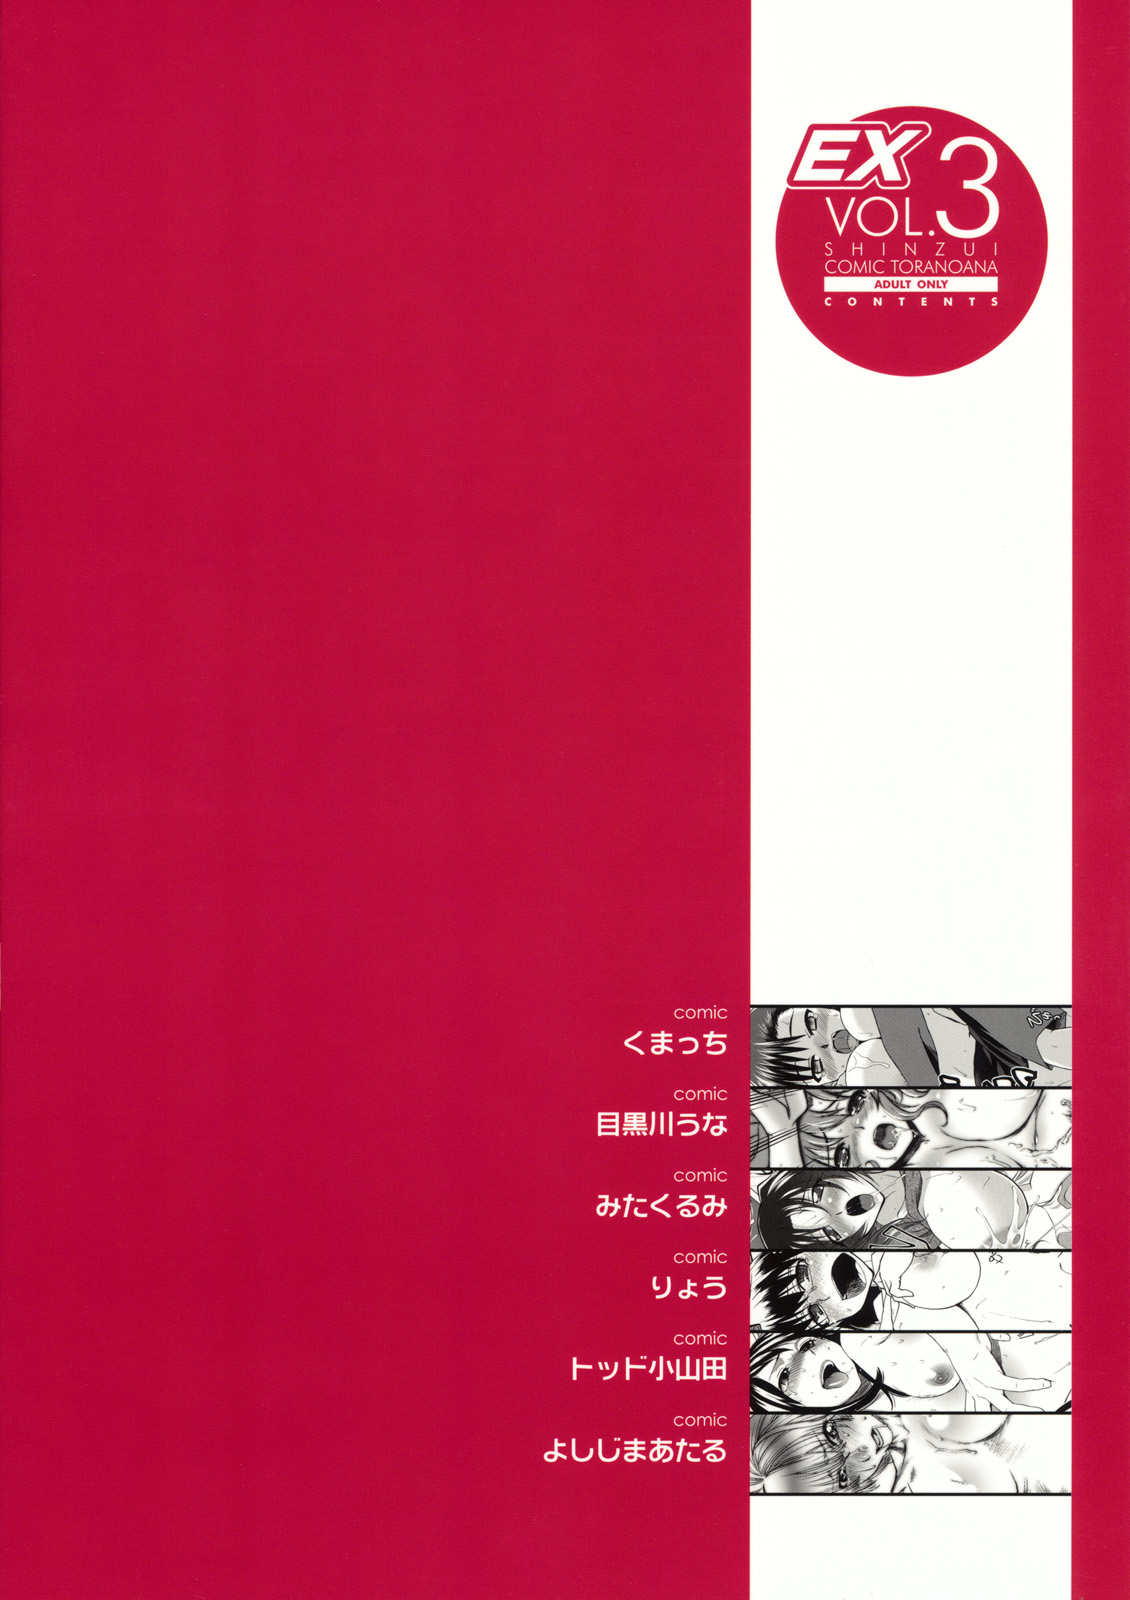 [Toranoana] Shinzui EX vol.3 (Original) [とらのあな] 真髄 EX vol.3 (オリジナル)